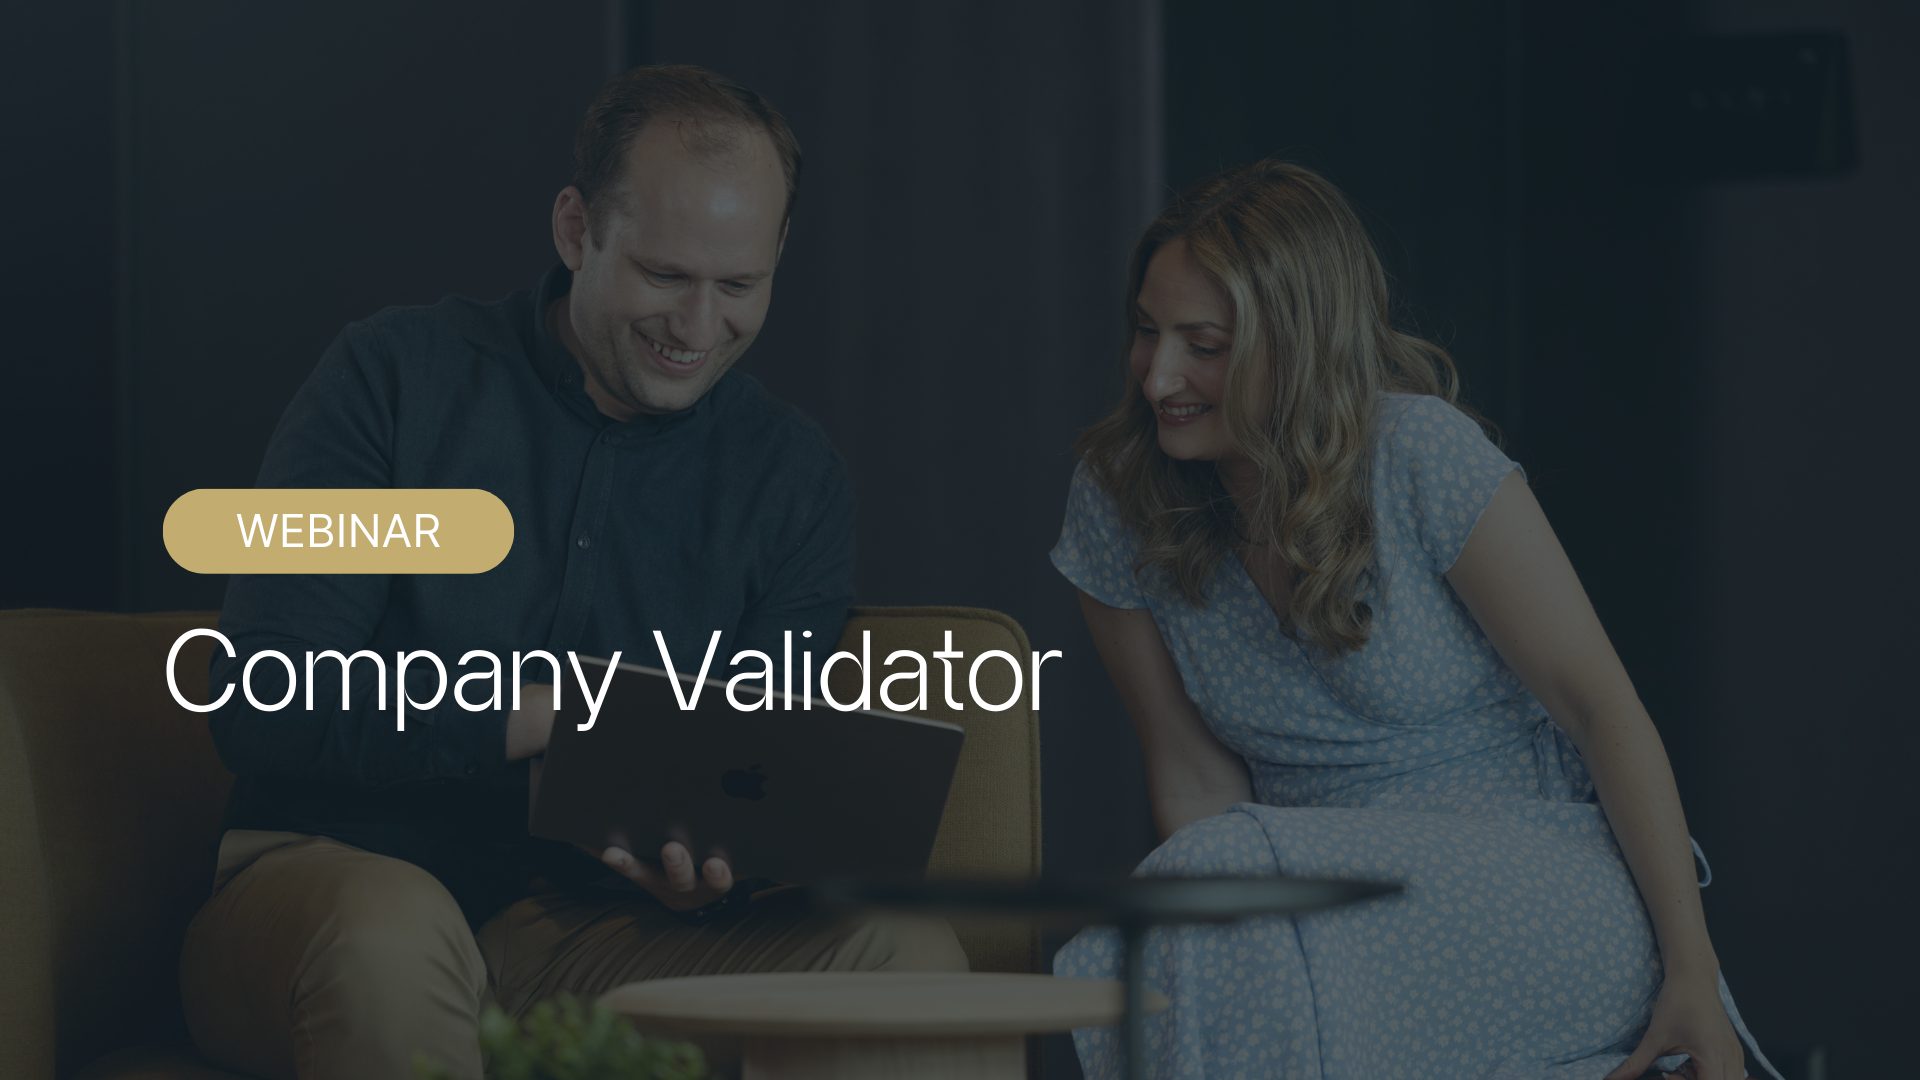 Webinar company validator med oppslag mot brønnøysundregisteret for unit4